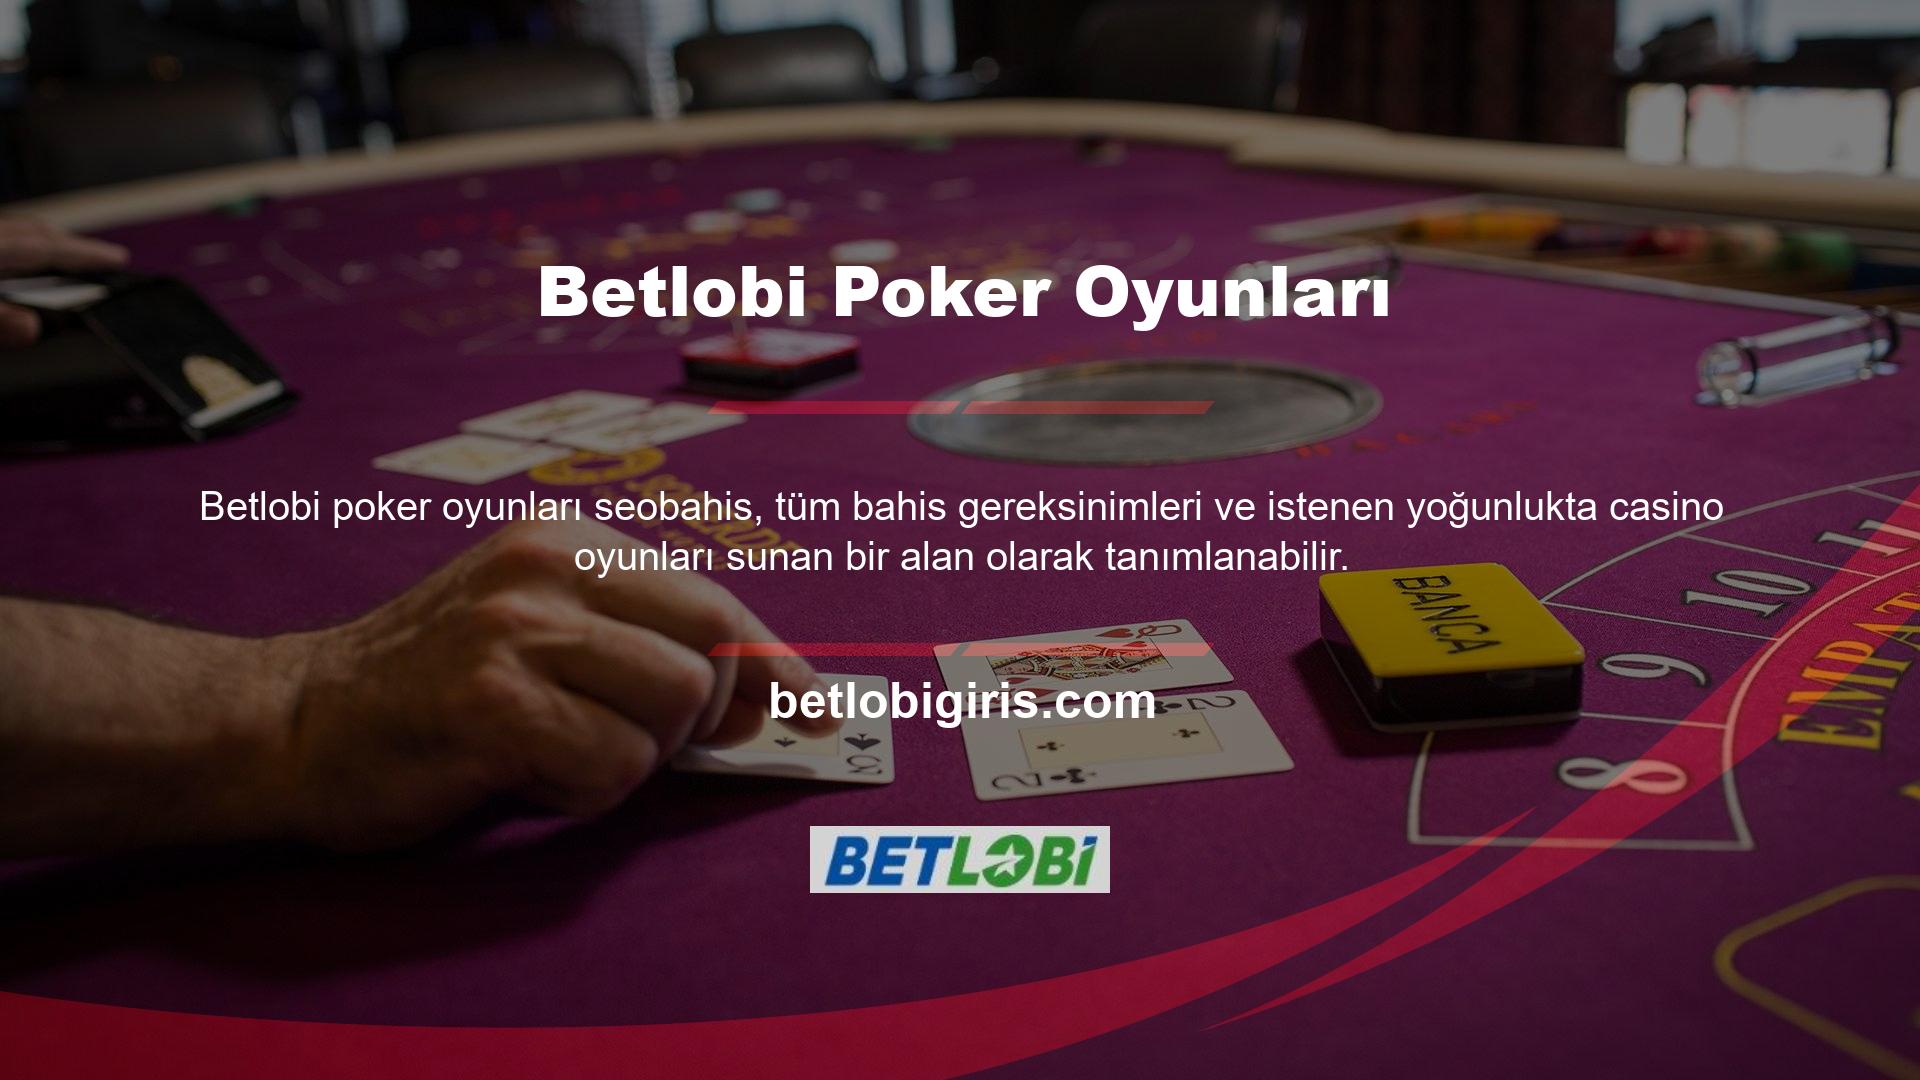 Adil bir altyapı ve yüksek kazanma potansiyeli, Betlobi Poker'i Türkiye'nin en iyi casinolarından biri haline getirmiştir